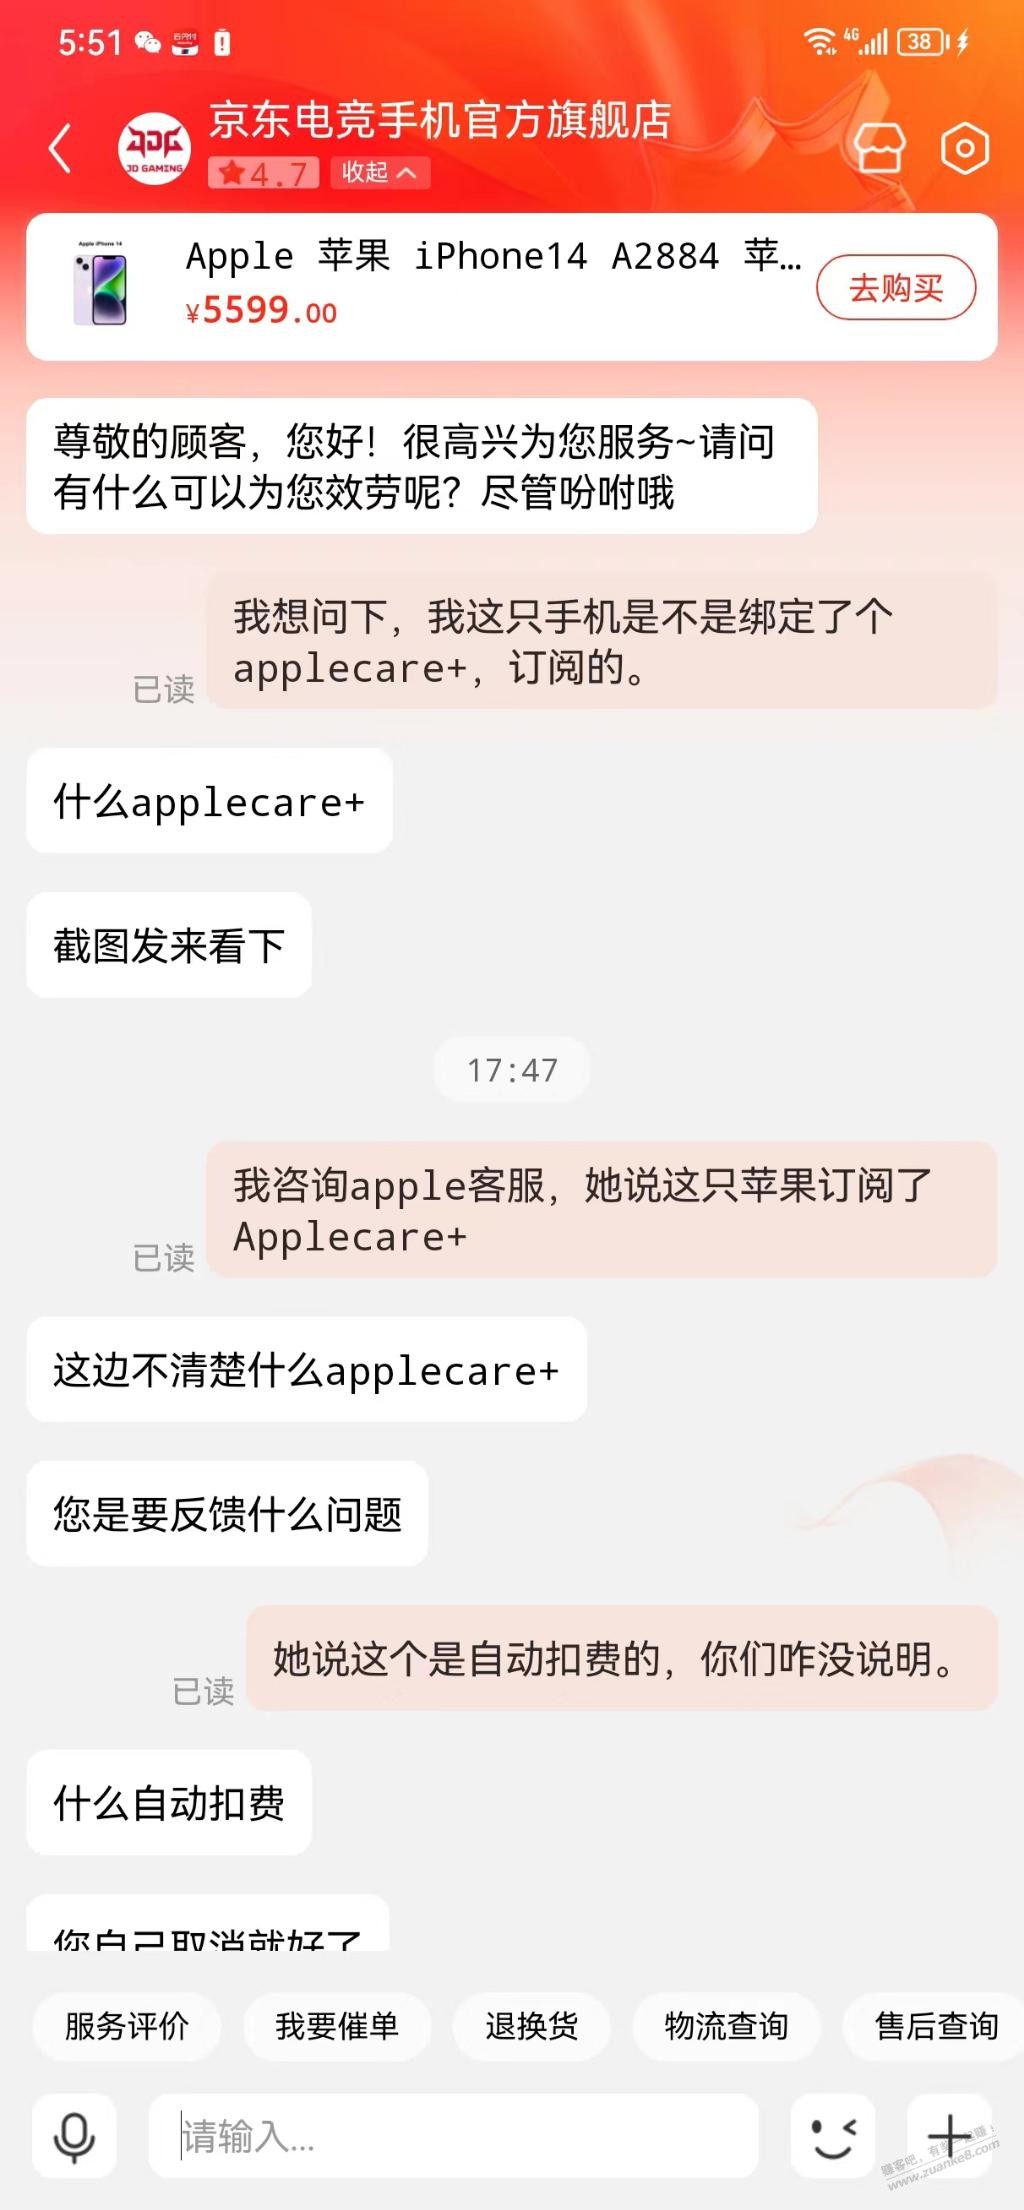 求助 在京东电竞购买了只苹果14 发现是预激活且被订阅了applecare+